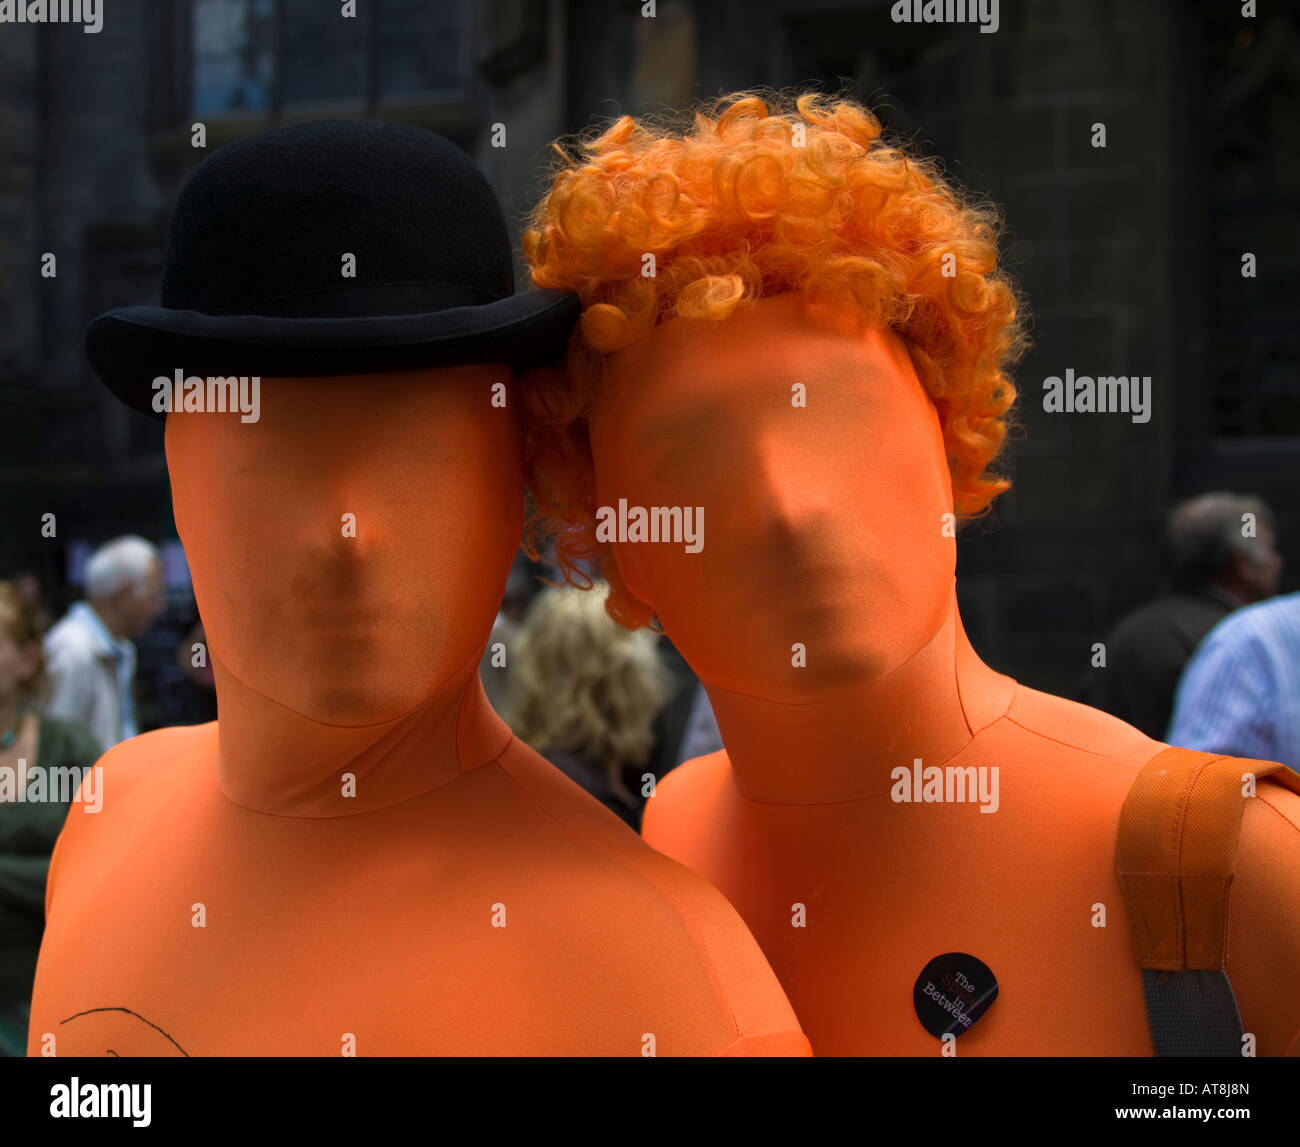 Zwei Schauspieler, die in orange Outfits gekleidet darstellen, Edinburgh Fringe Festival, Schottland, UK, Europa Stockfoto